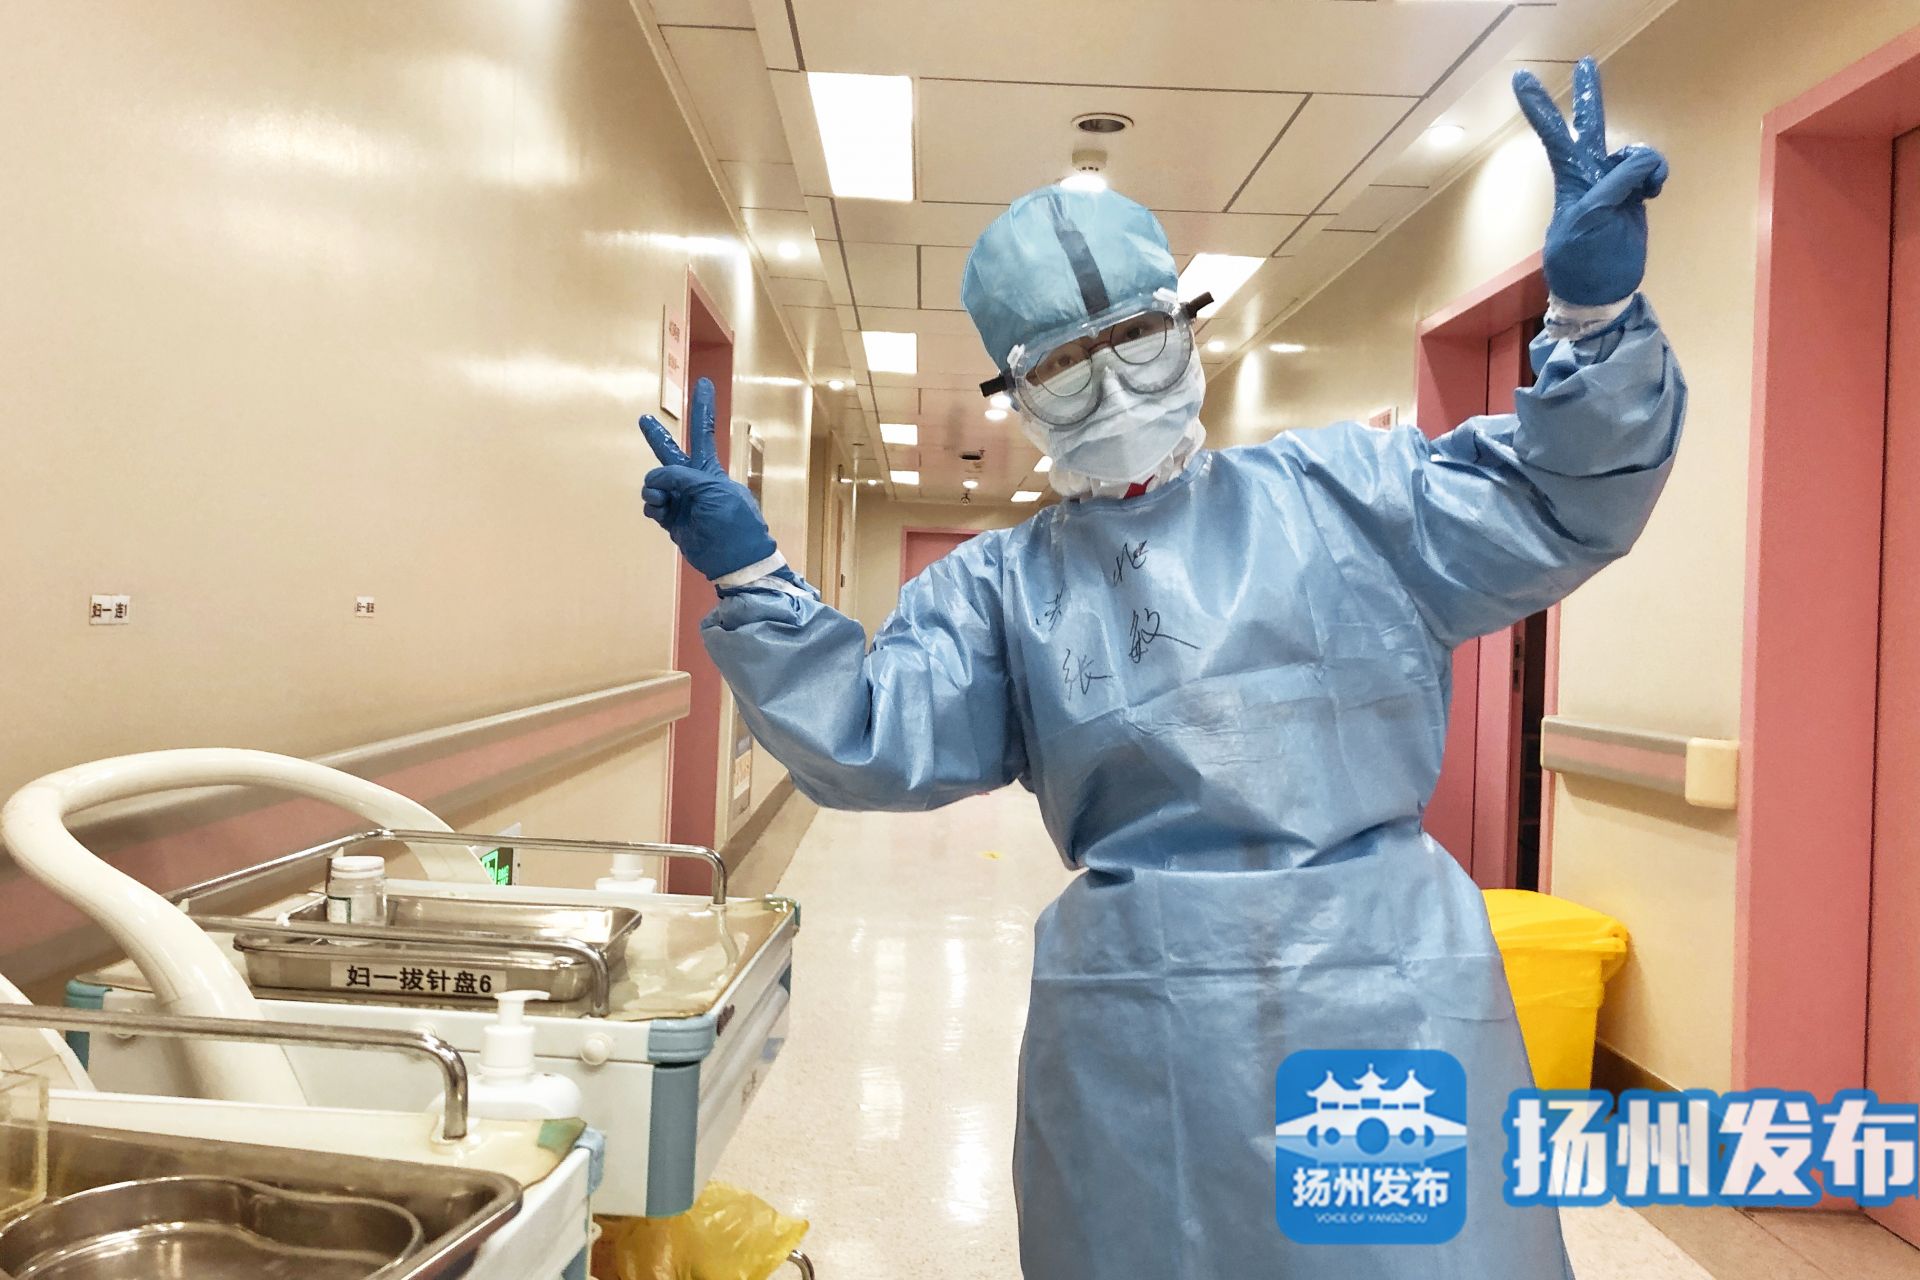 【武汉日记·视频】扬州高邮市委书记连线抗疫前线医务人员